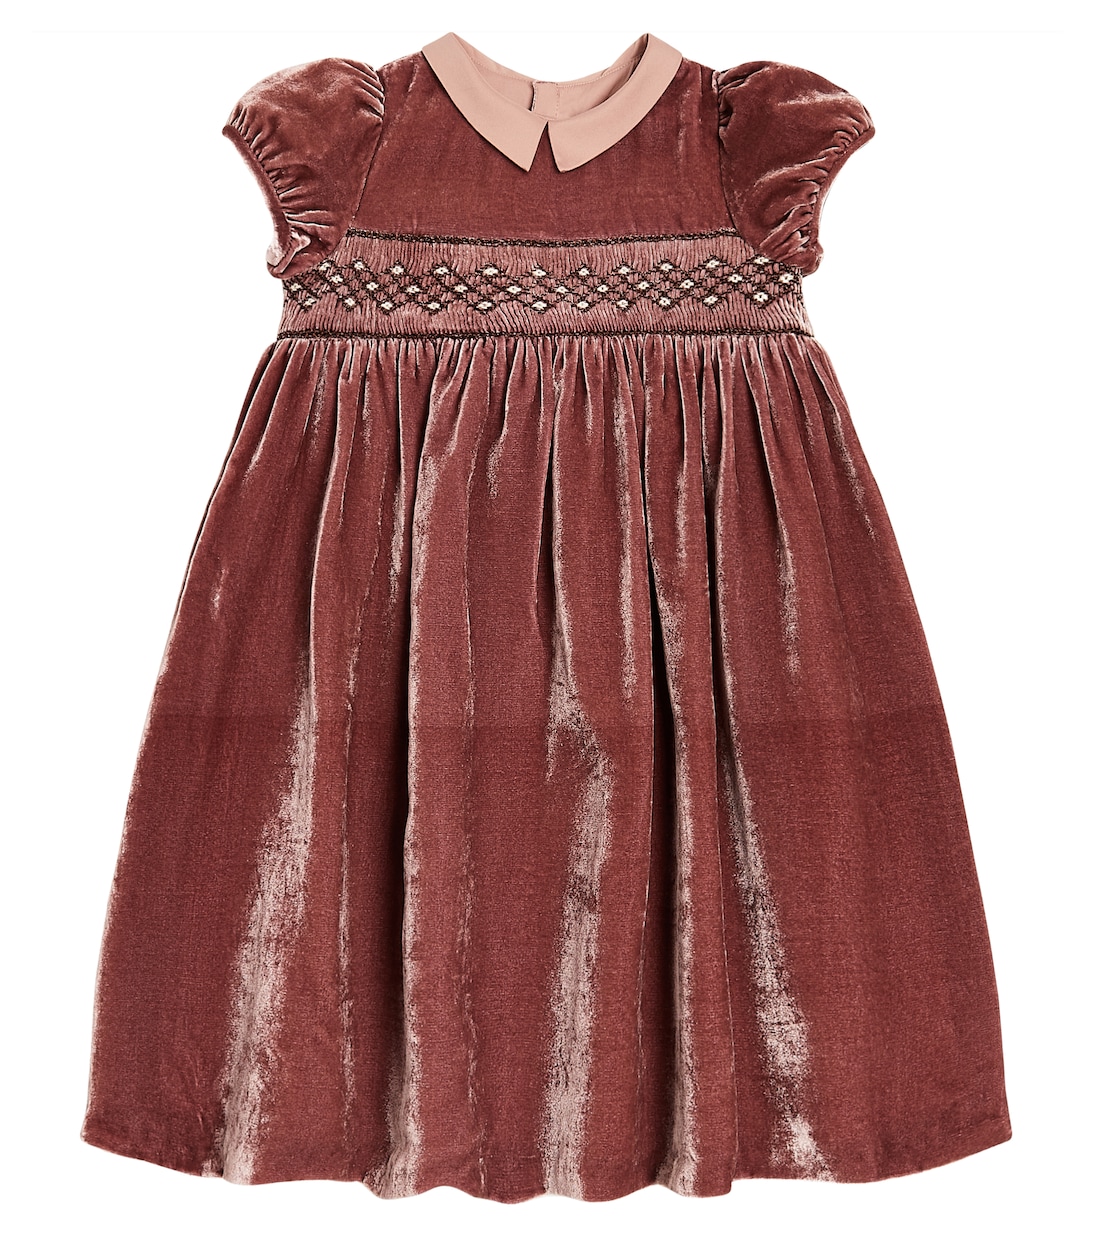 Бархатное платье с цветочной вышивкой Bonpoint, коричневый платье eleni viare бархатное с вышивкой 50 размер новое